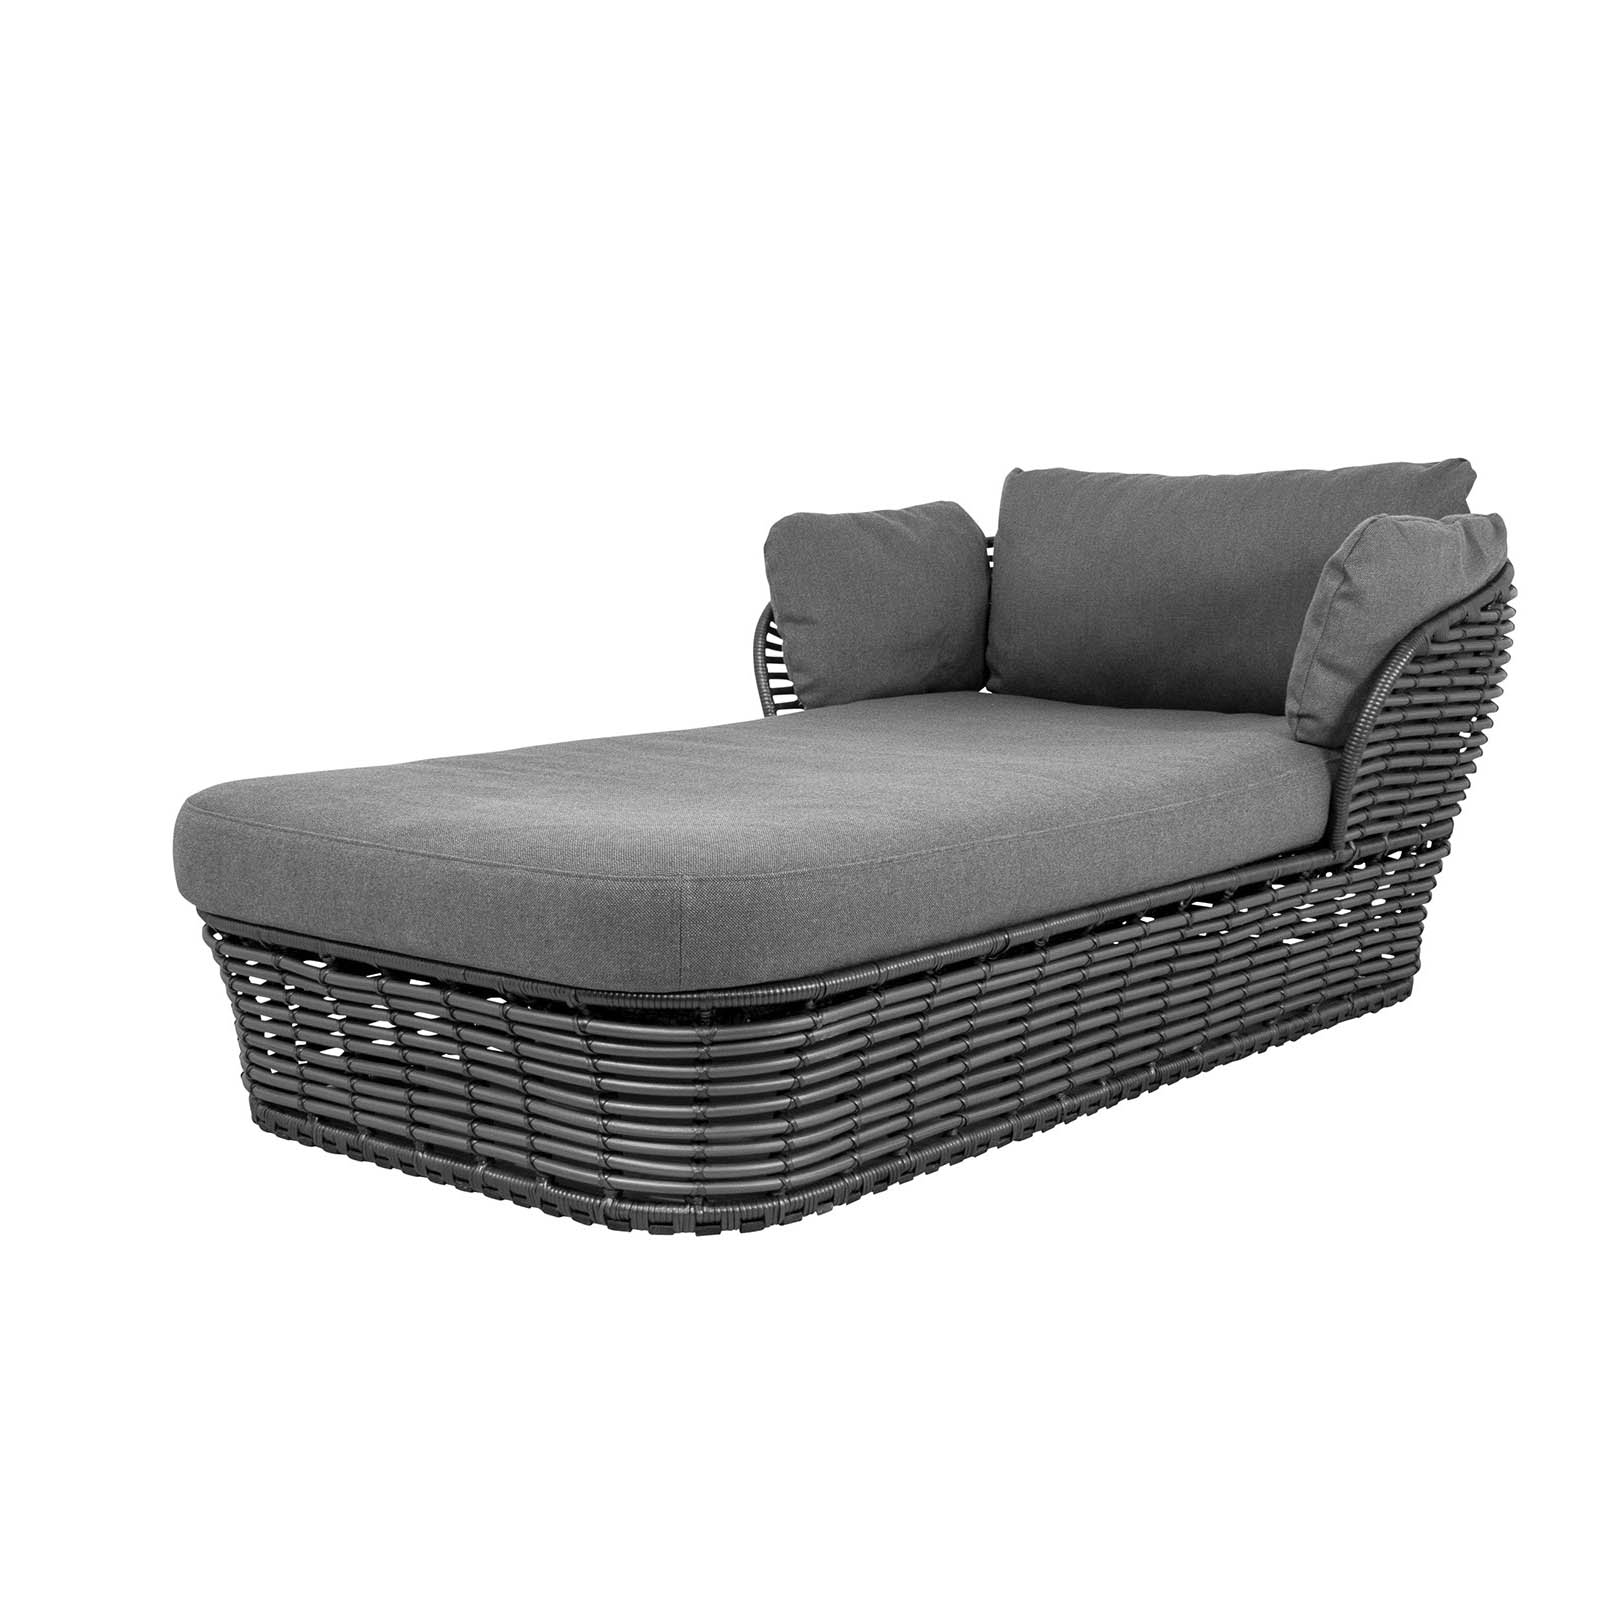 Basket daybed aus Cane-line Weave in Graphite mit Kissen aus Cane-line AirTouch in